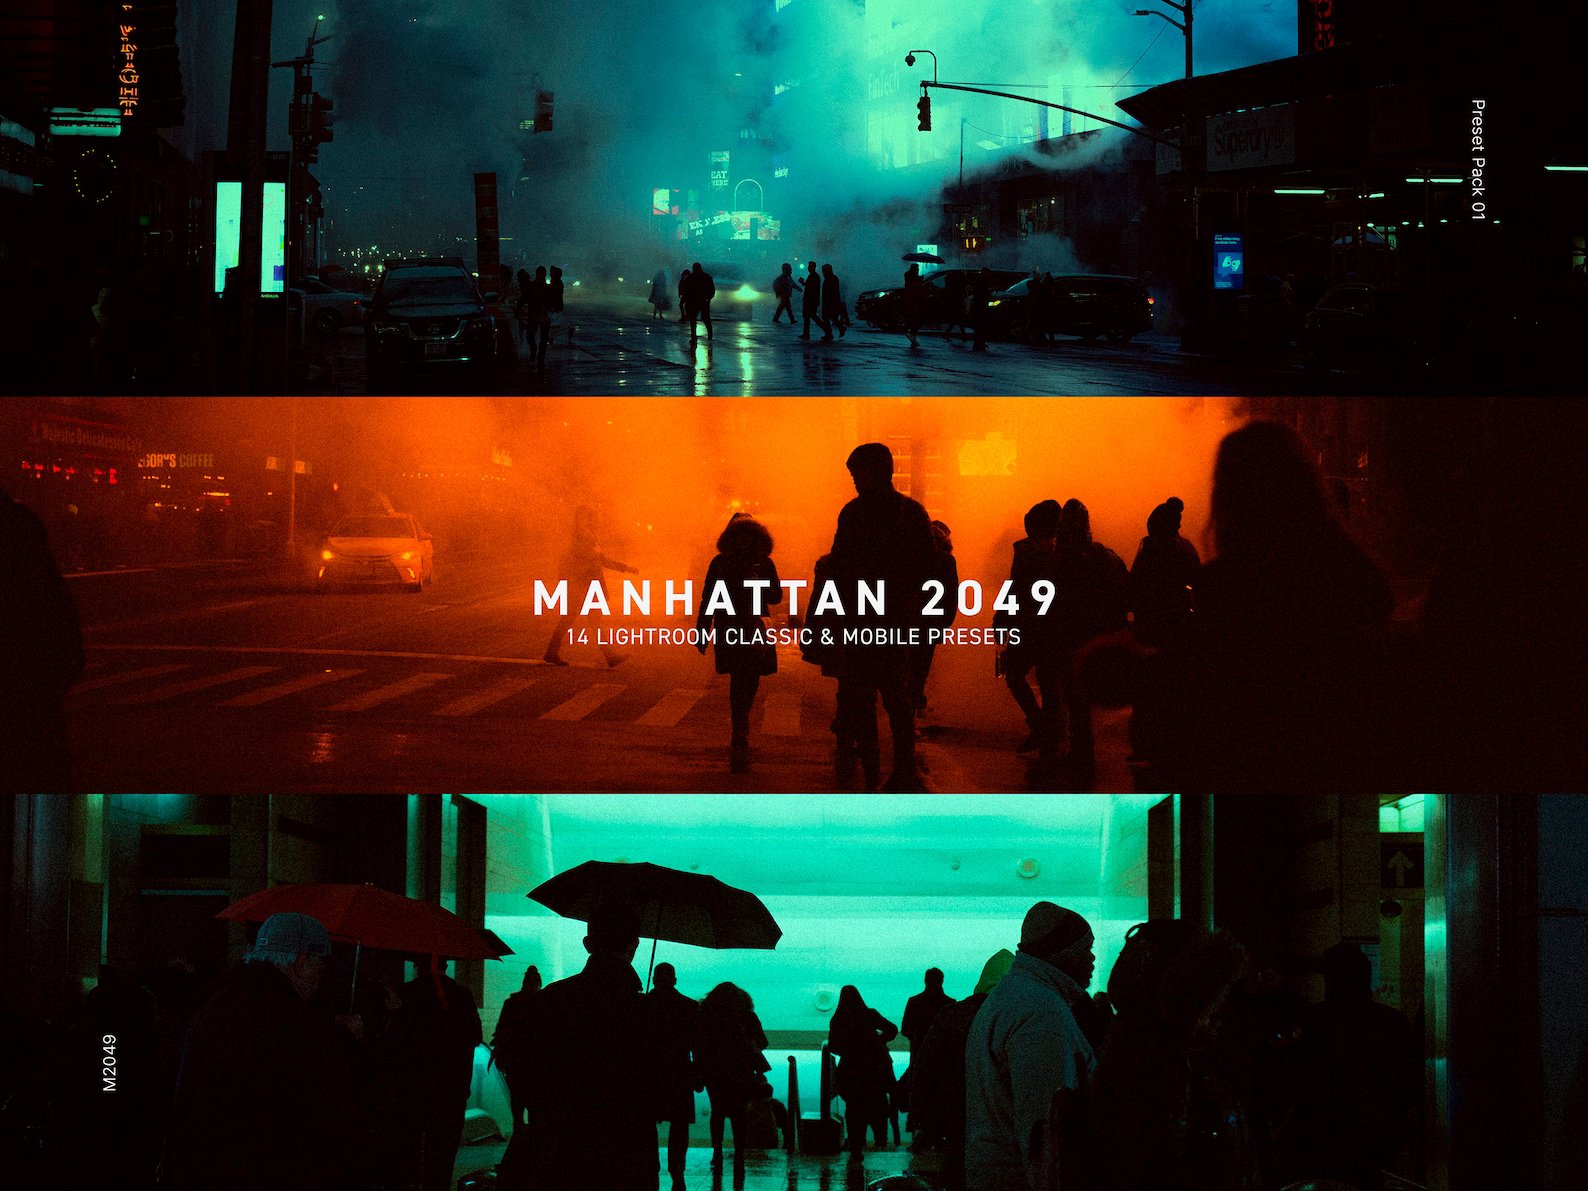 14个受《银翼杀手》电影启发复古浓郁胶片扫街城市人文夜间摄影人像Lightroom预设 Manhattan 2049 插件预设 第1张